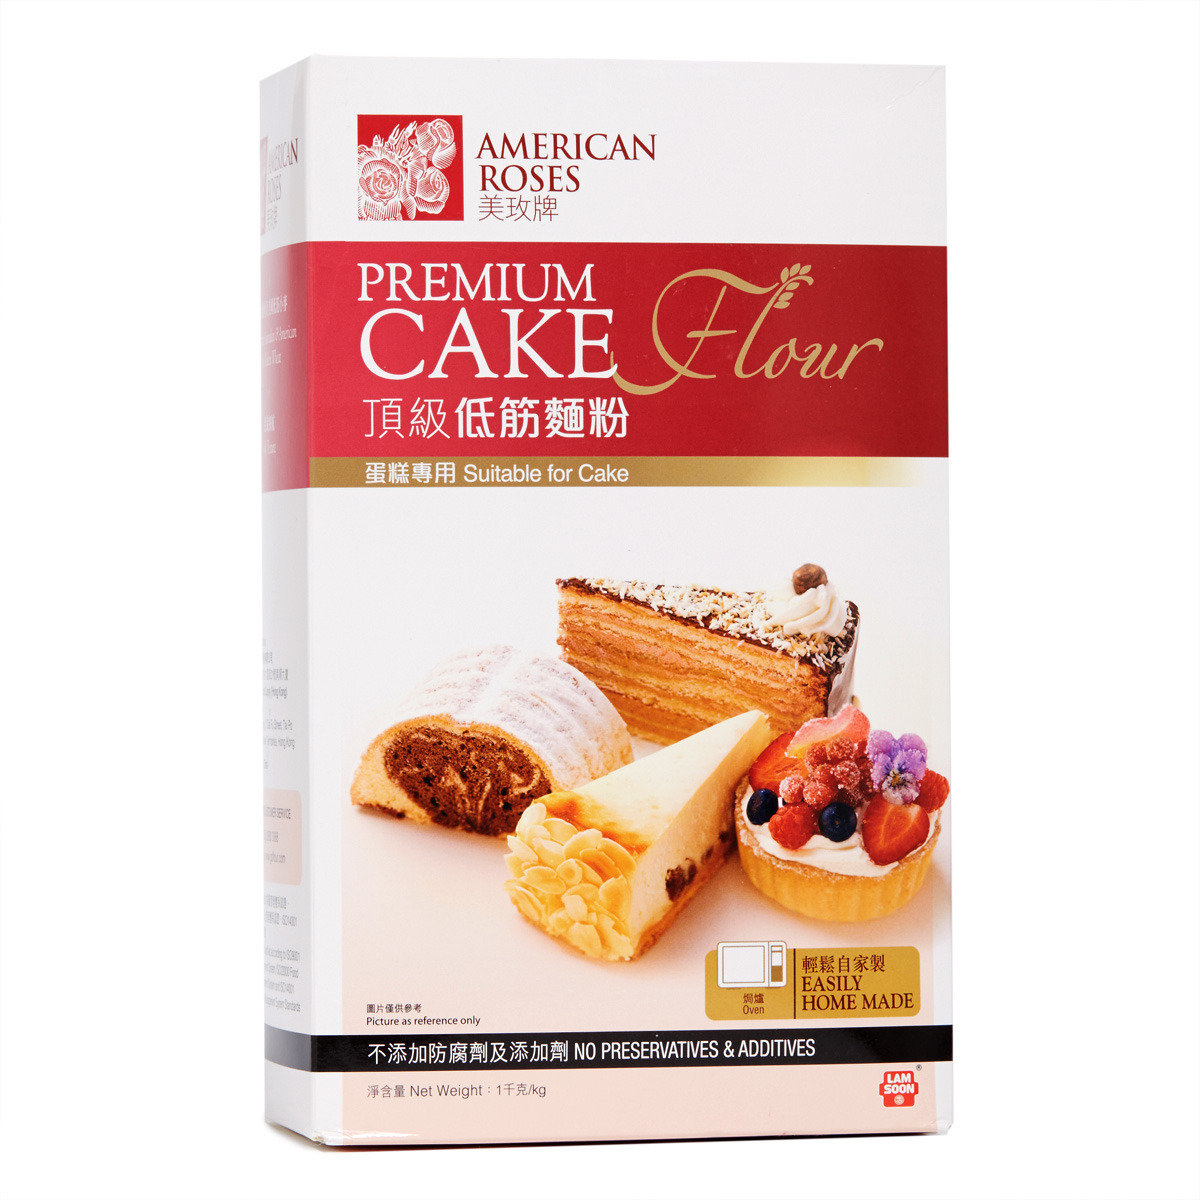 Premium Cake Flour (Suitable for Cake)